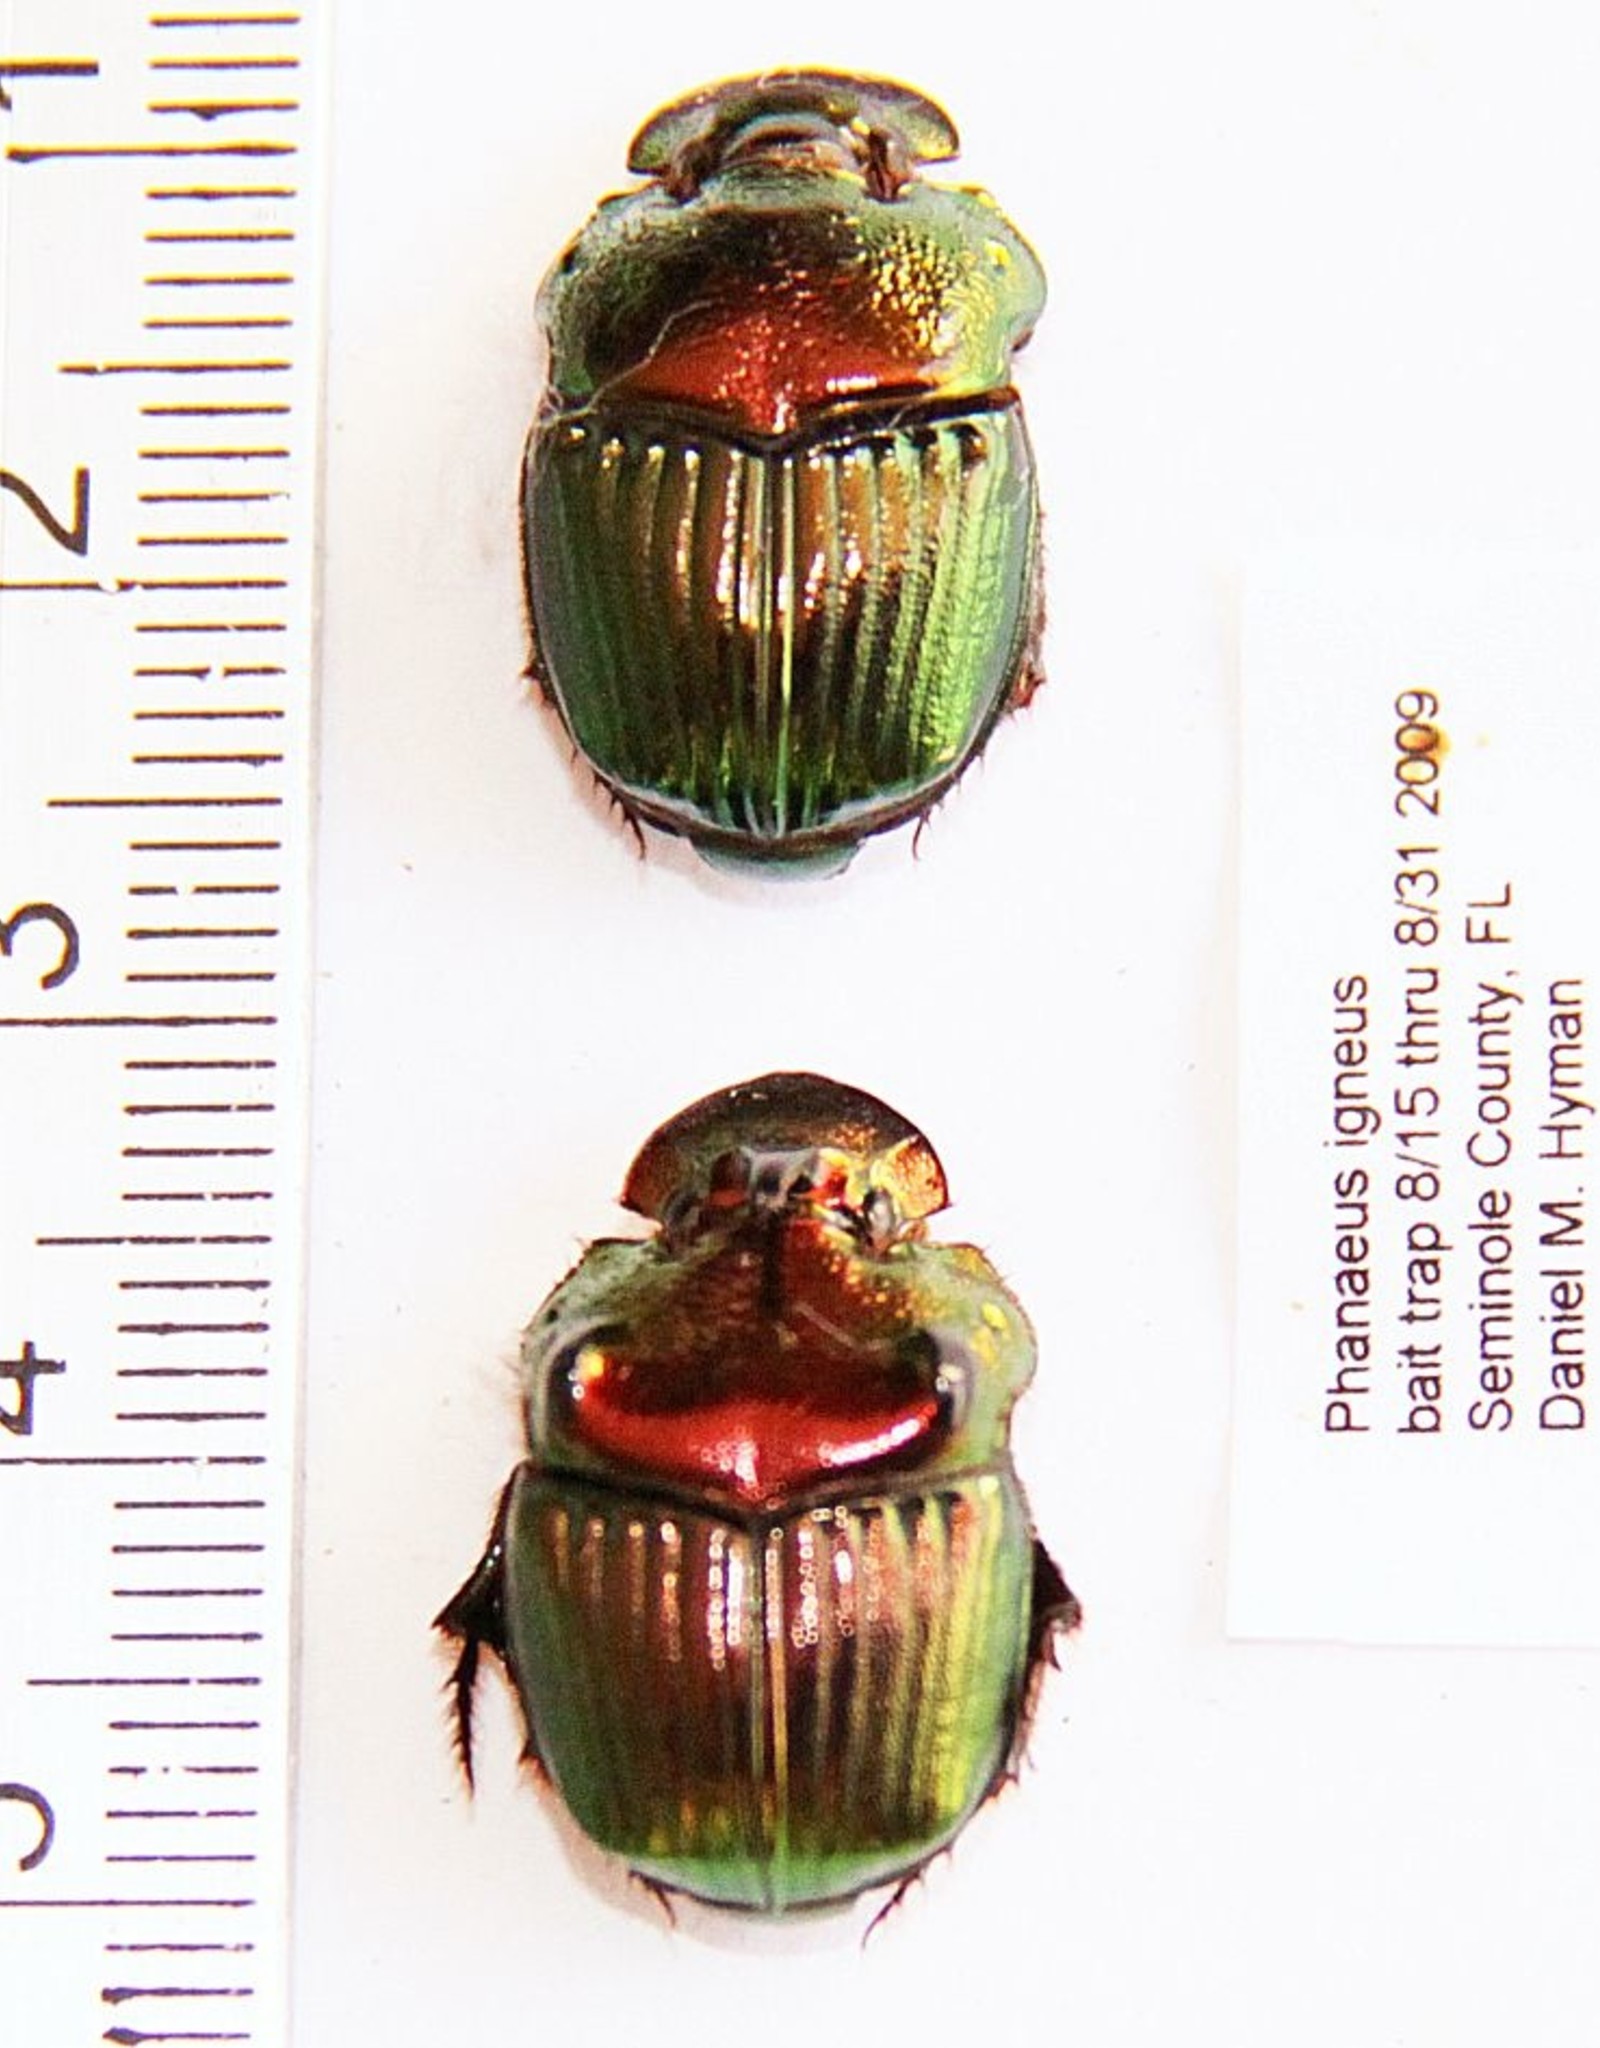 Phanaeus igneus PAIR A1 USA 1.3-1.5 cm